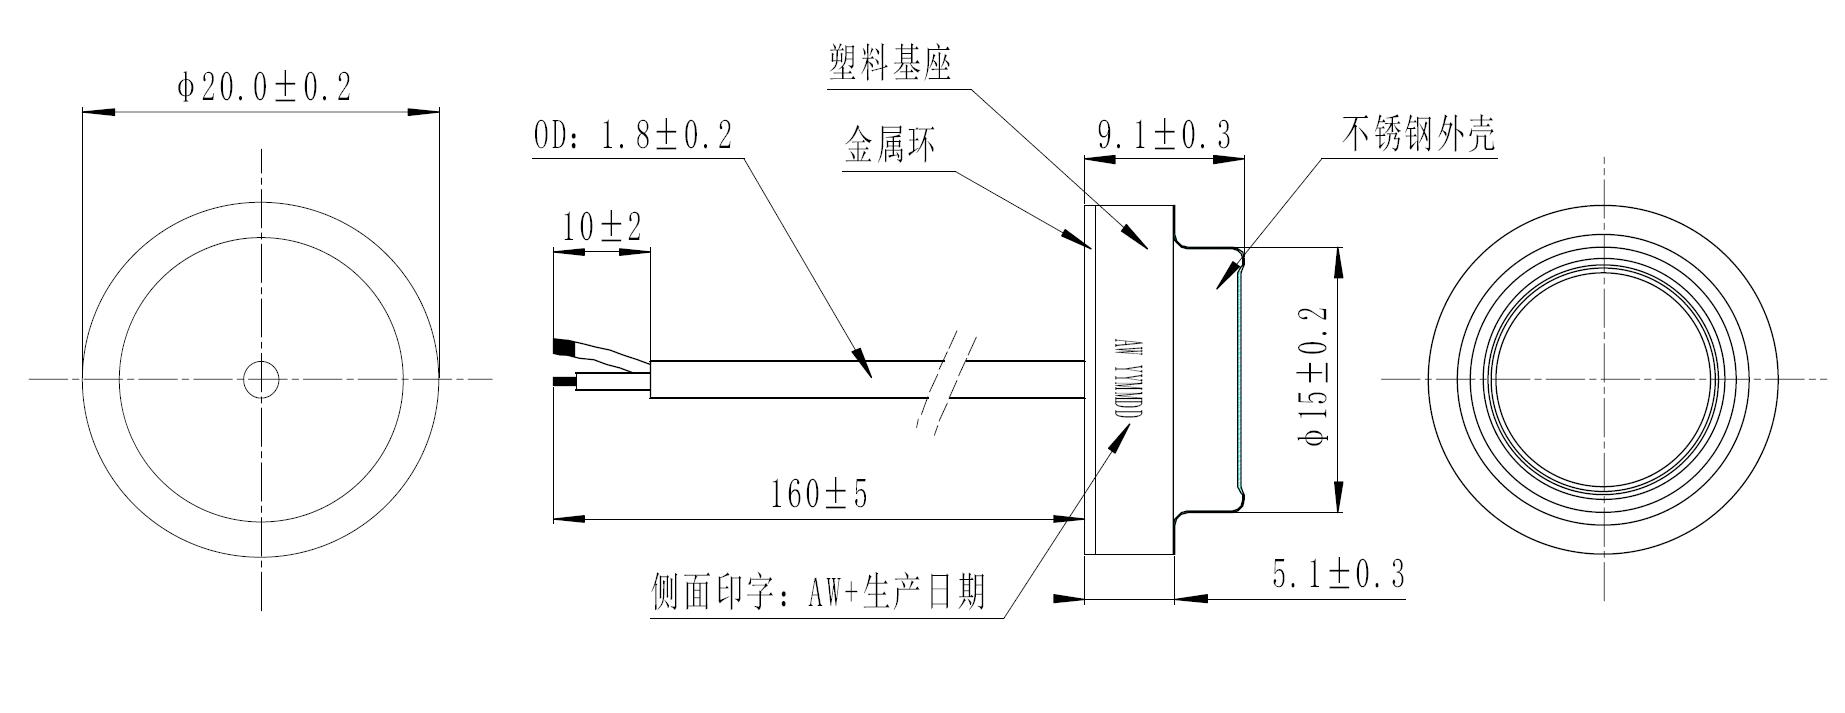 流量传感器US0013尺寸图.jpg